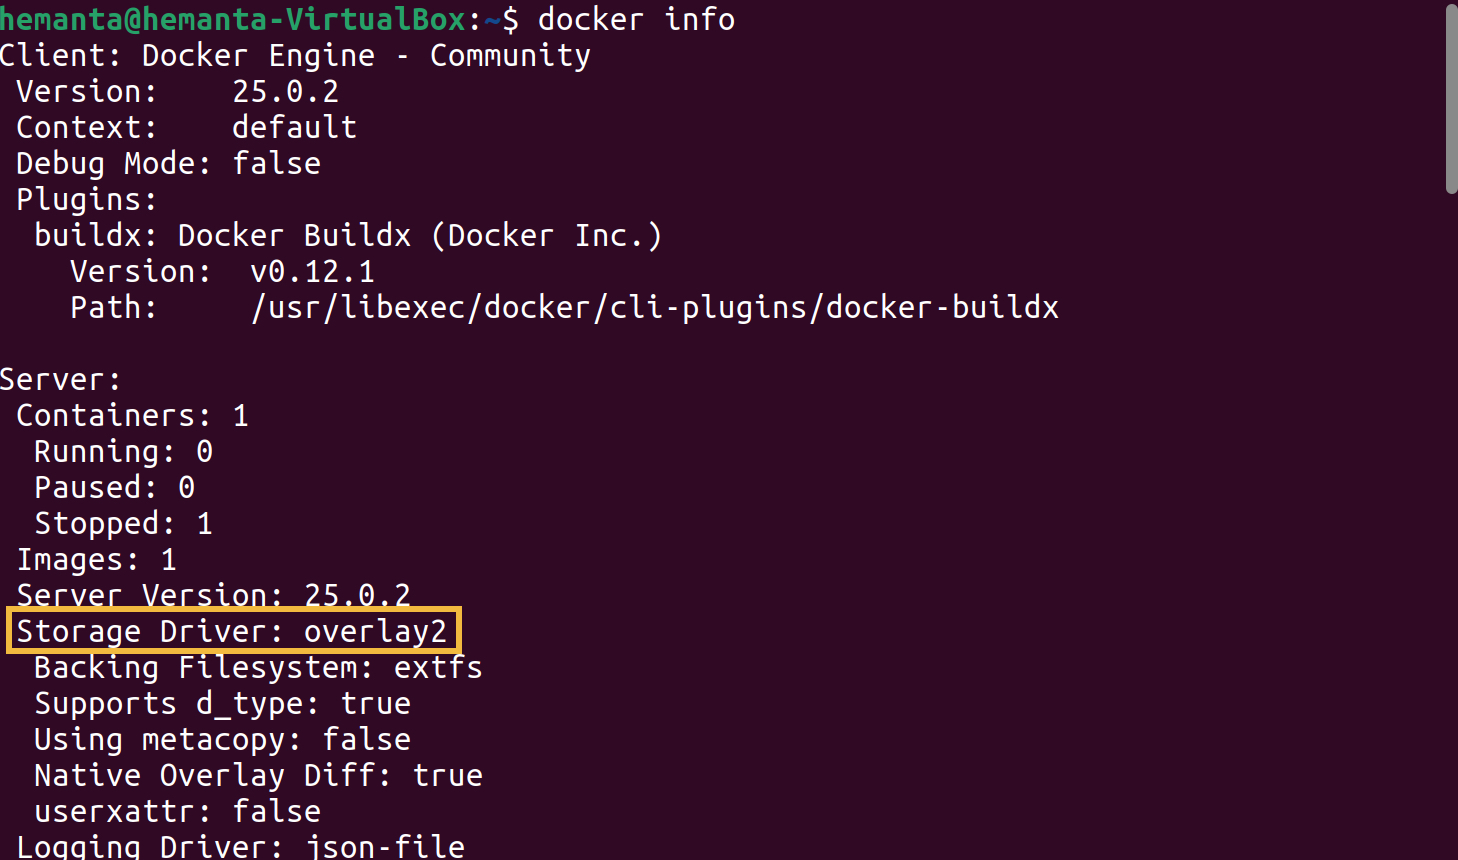 docker info command output